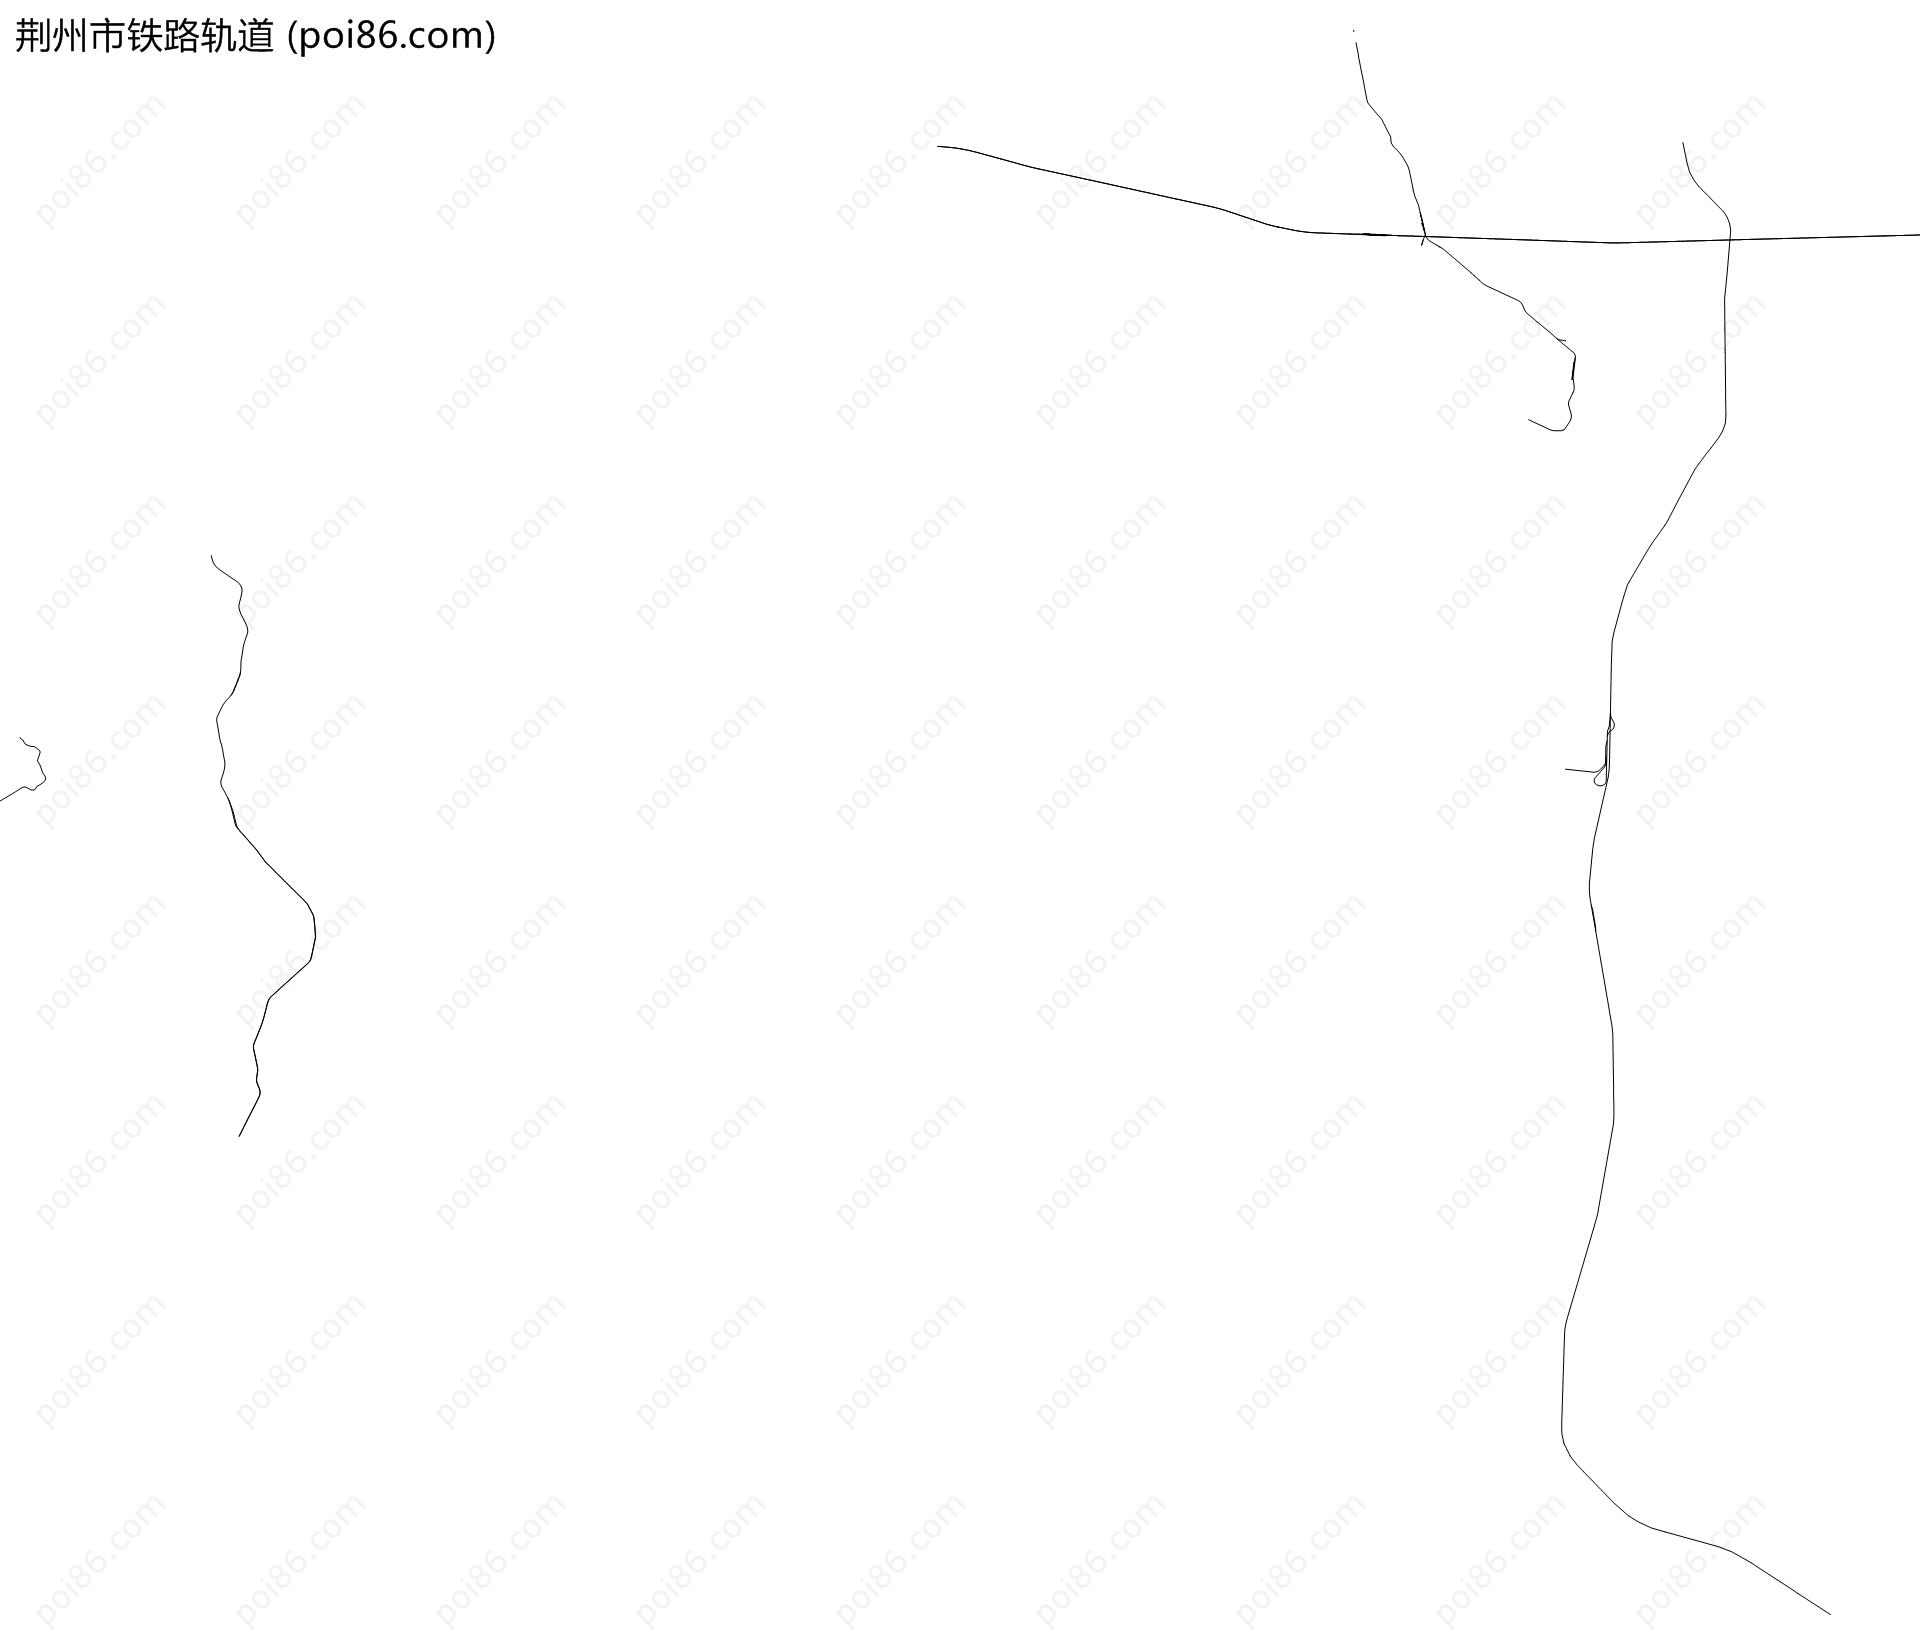 荆州市铁路轨道地图